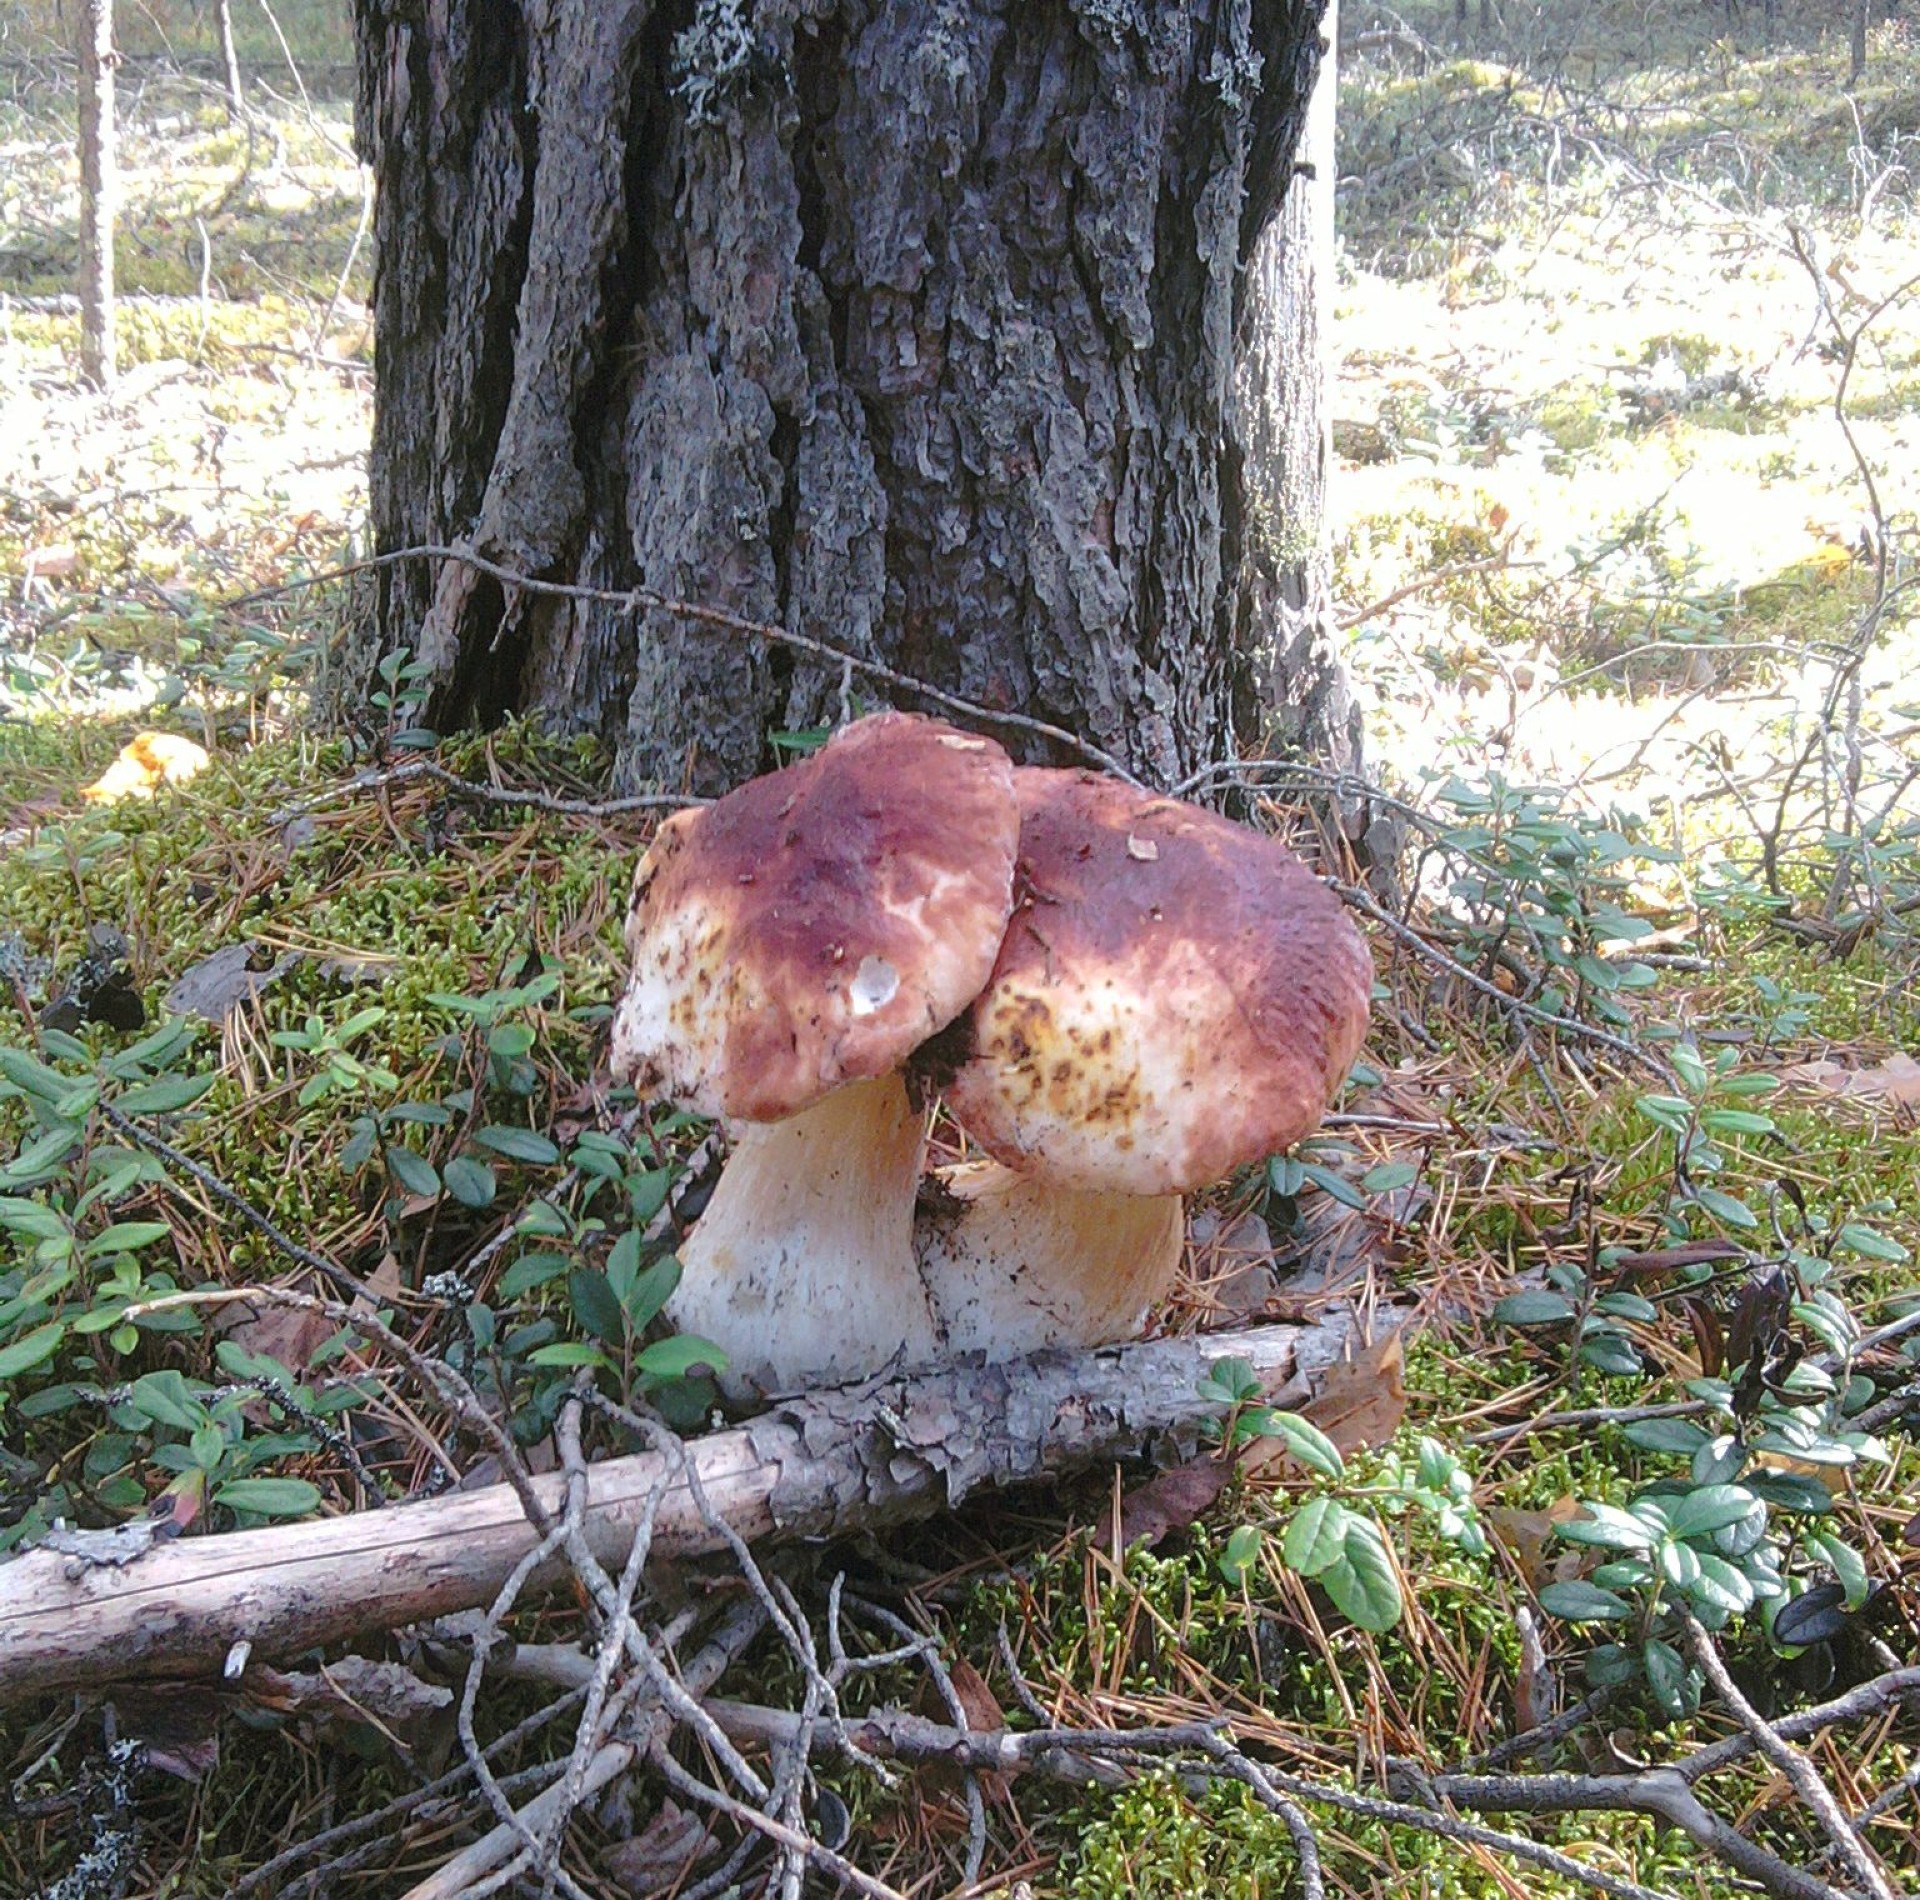 грибы грибок гриб боровик осень крышка съедобные поганки природа древесины мох спорово на открытом воздухе яд еда сезон флора трава дикий